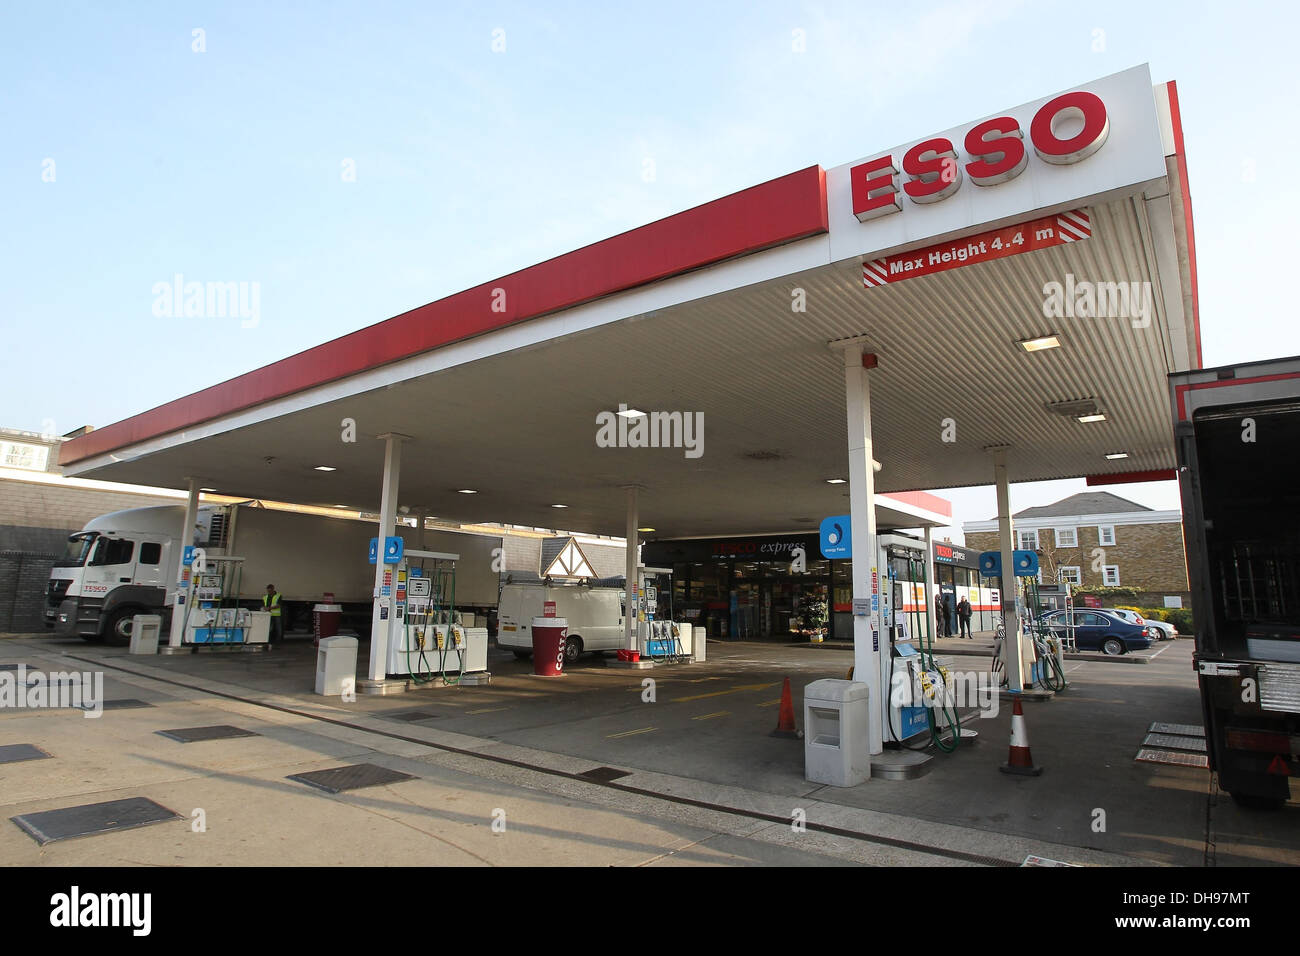 Eine Esso-Tankstelle in der Nähe von Hammersmith Bridge Barnes ist wegen  Treibstoffmangel geschlossen sind Tankstellen über Land Stockfotografie -  Alamy